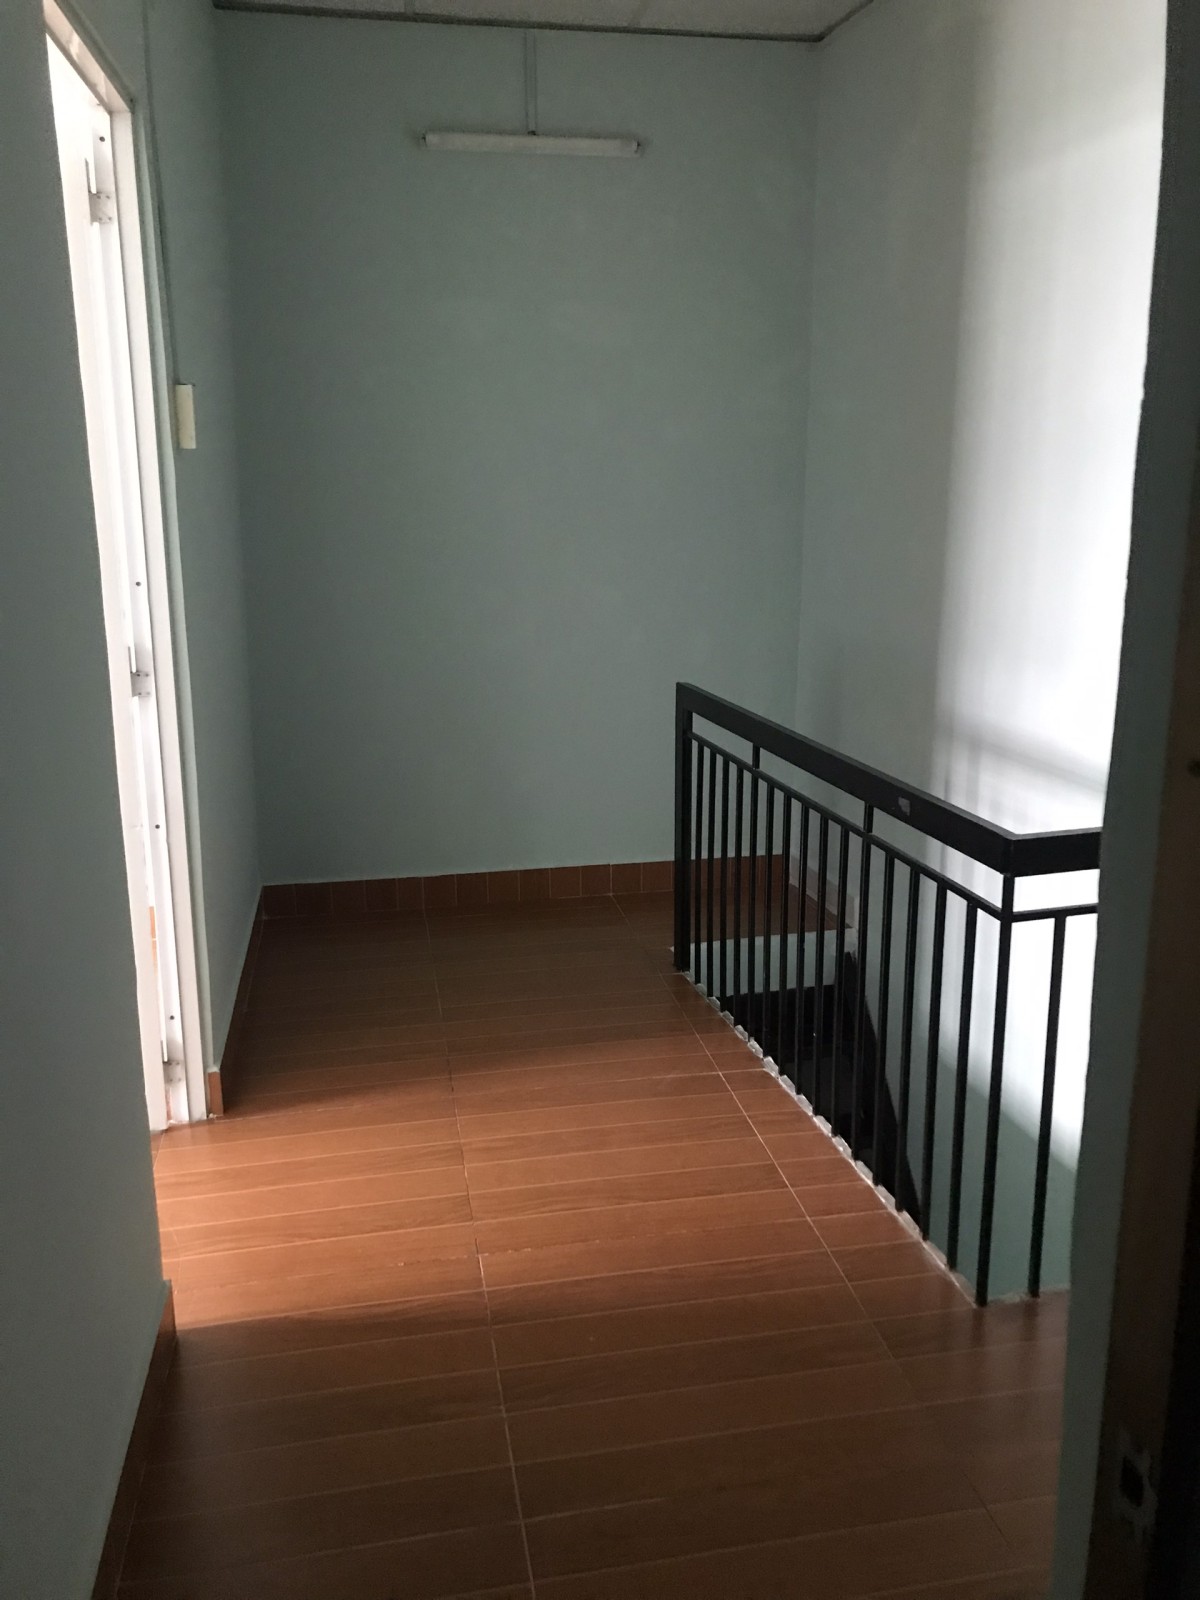 Chính chủ cho thuê nhà riêng mới sơn sửa 22.8m2 đầu hẻm đường Vạn Kiếp phường 3 Bình Thạnh